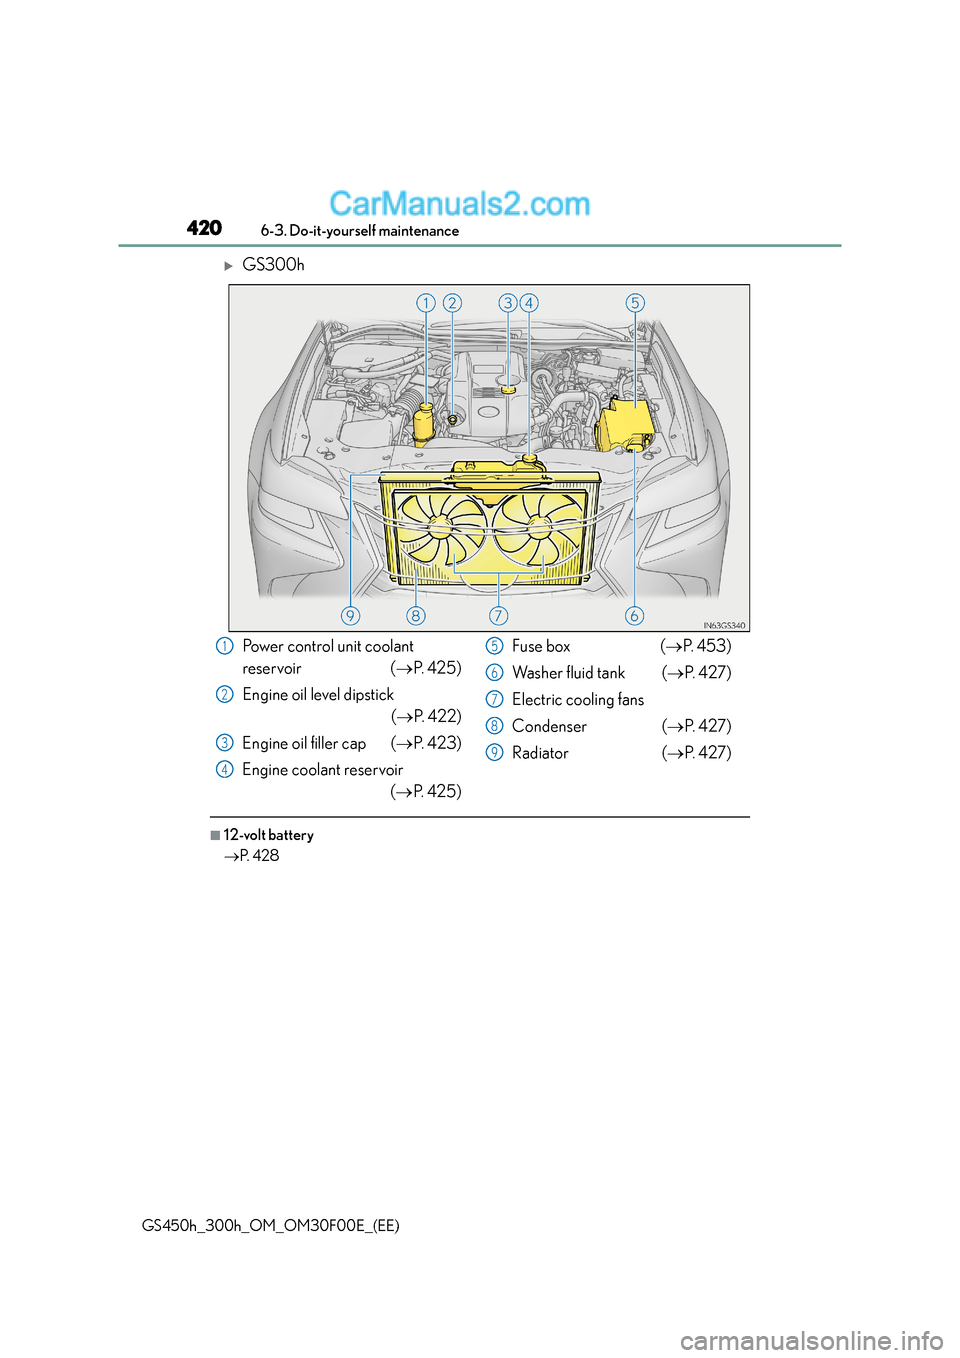 Lexus GS300h 2015  Owners Manual 4206-3. Do-it-yourself maintenance
GS450h_300h_OM_OM30F00E_(EE)
�XGS300h
■12-volt battery
→P.  4 2 8
Power control unit coolant 
reservoir ( →P.  4 2 5 )
Engine oil level dipstick (→ P. 422)
E